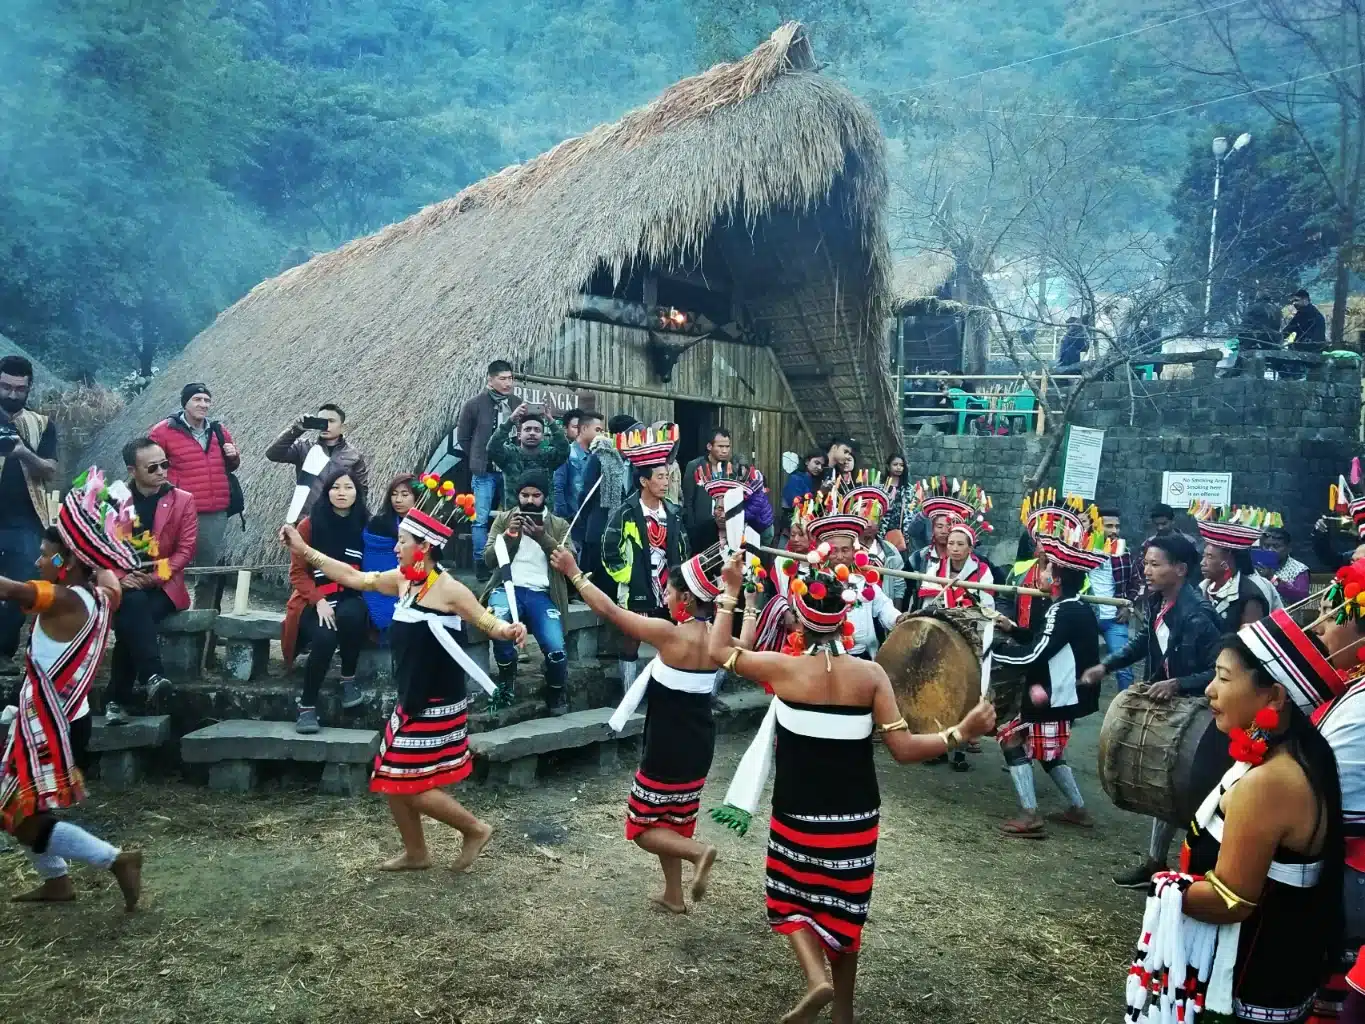 Hornbill festival in Nagaland, India